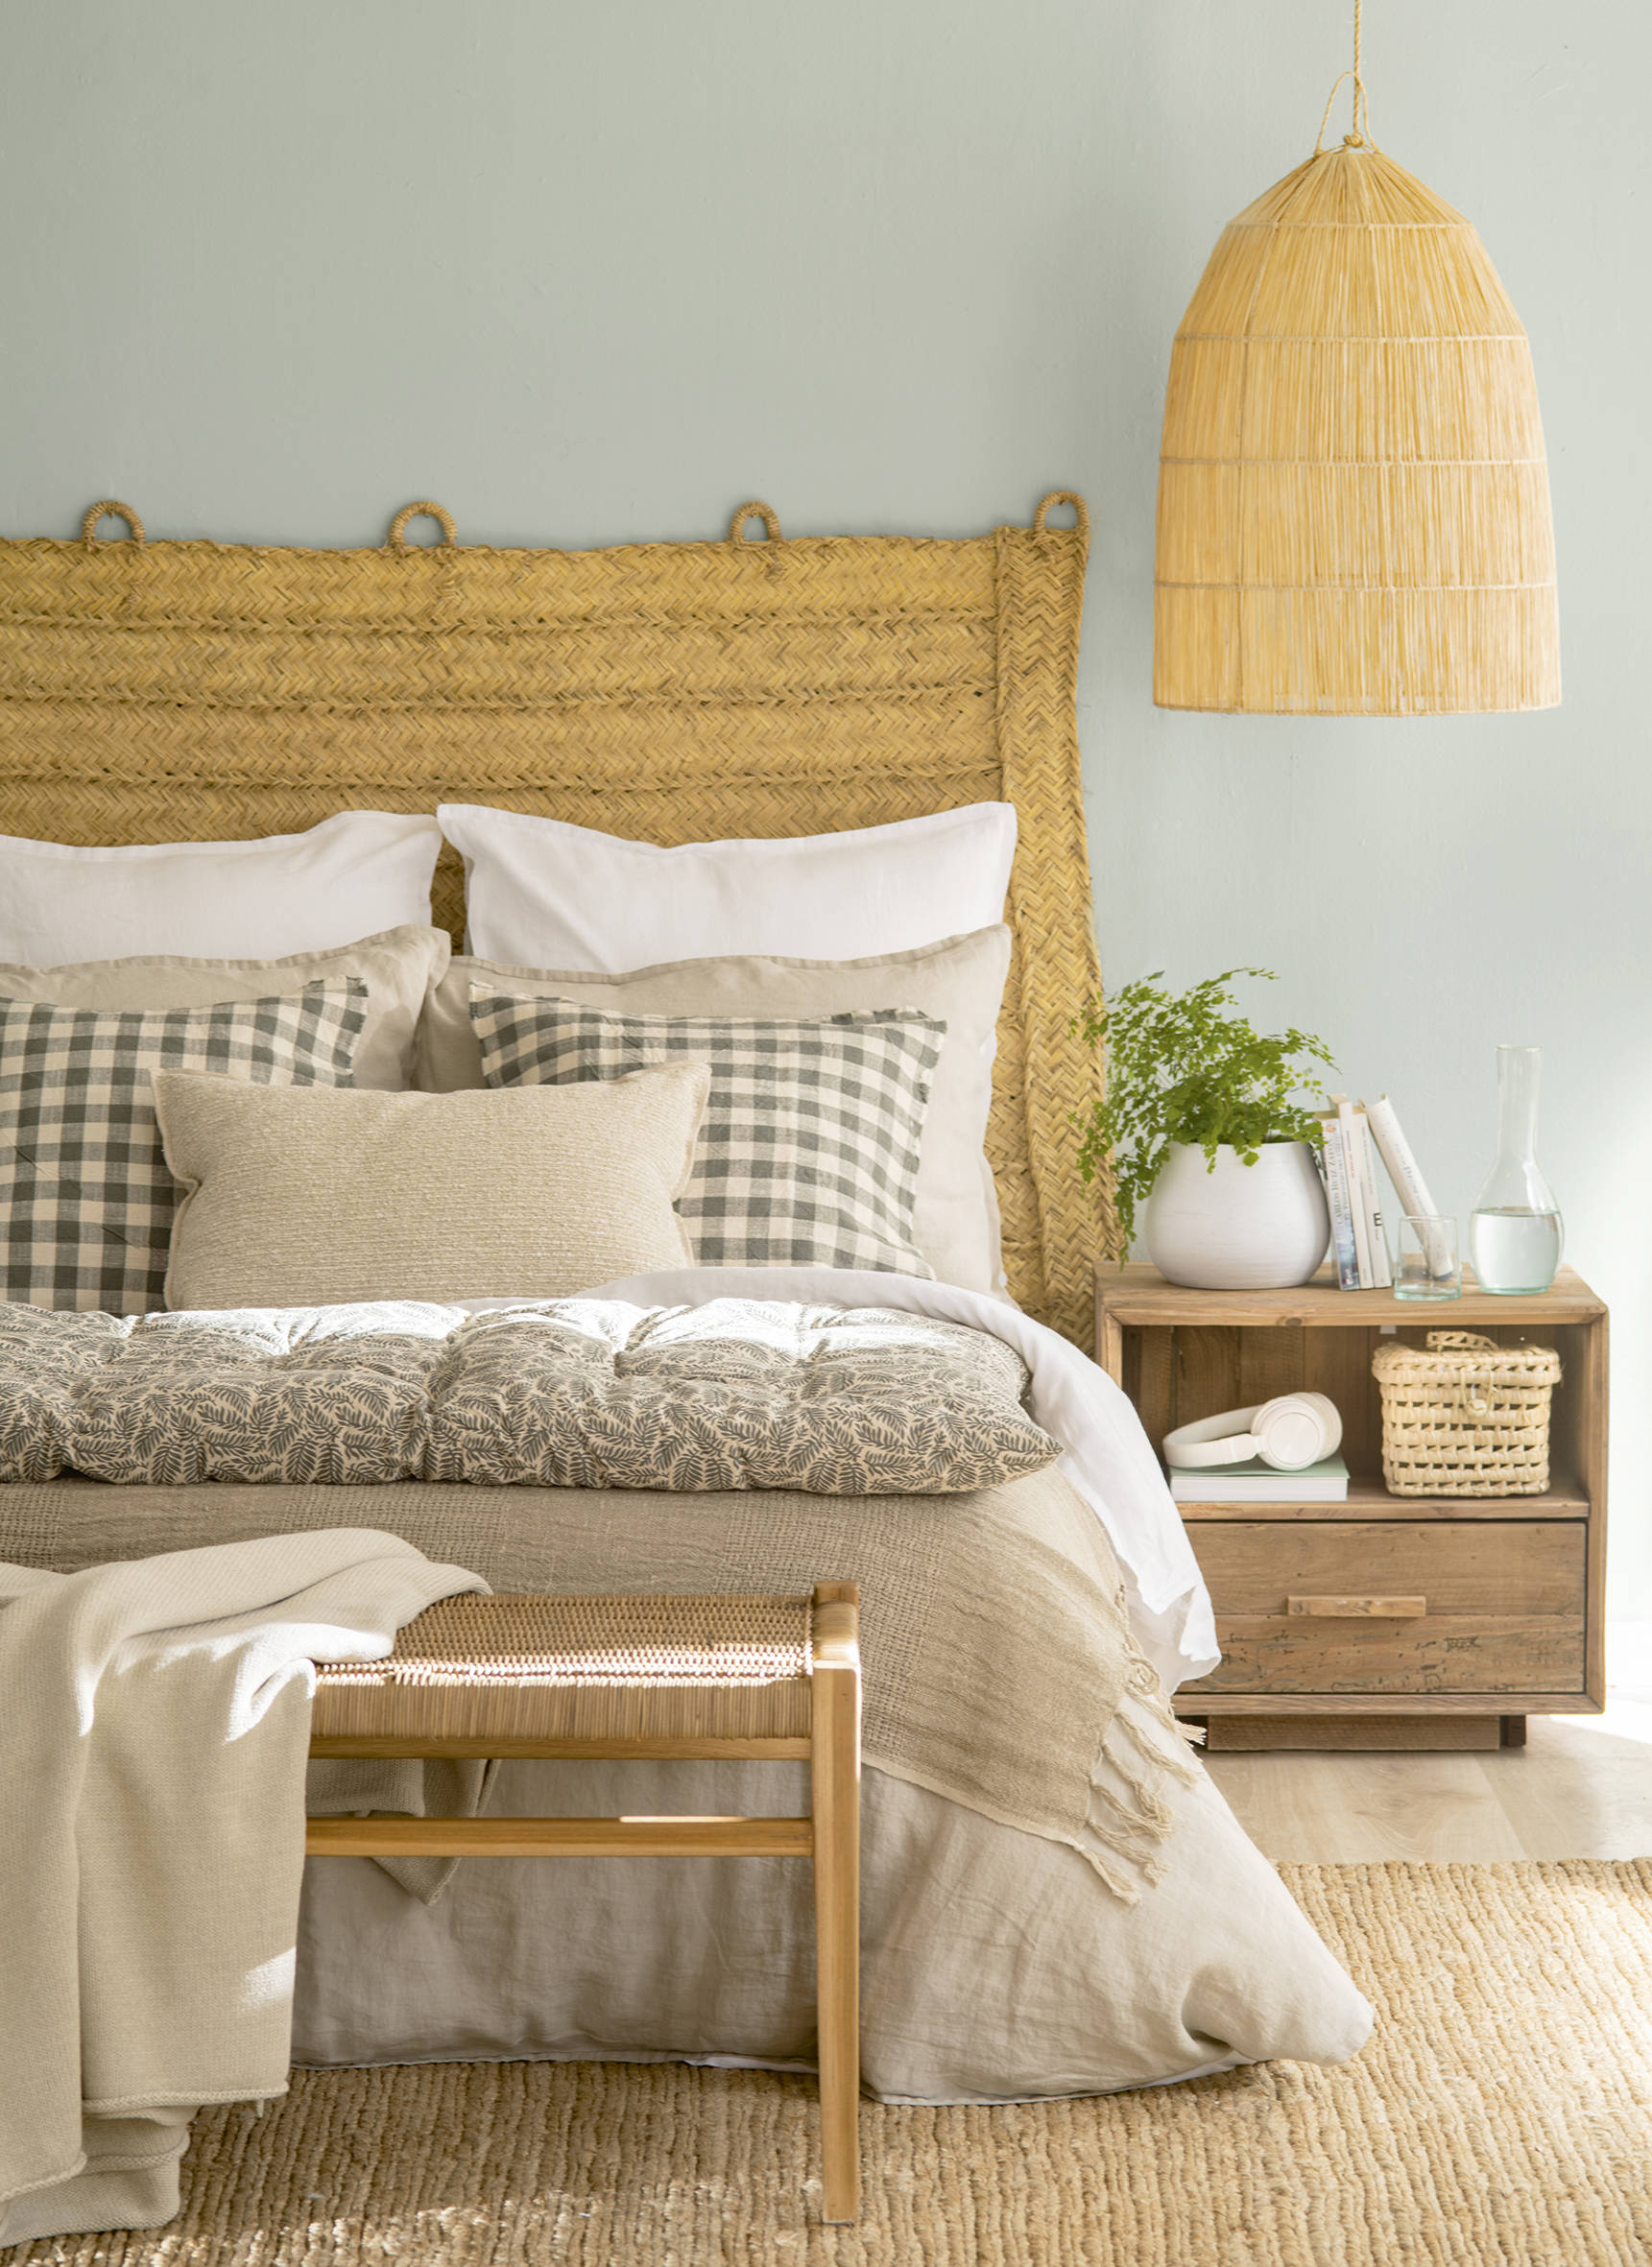  Dormitorio con cabecero de esparto, mesilla de madera sin tratar y ropa de cama beige y verde.558438